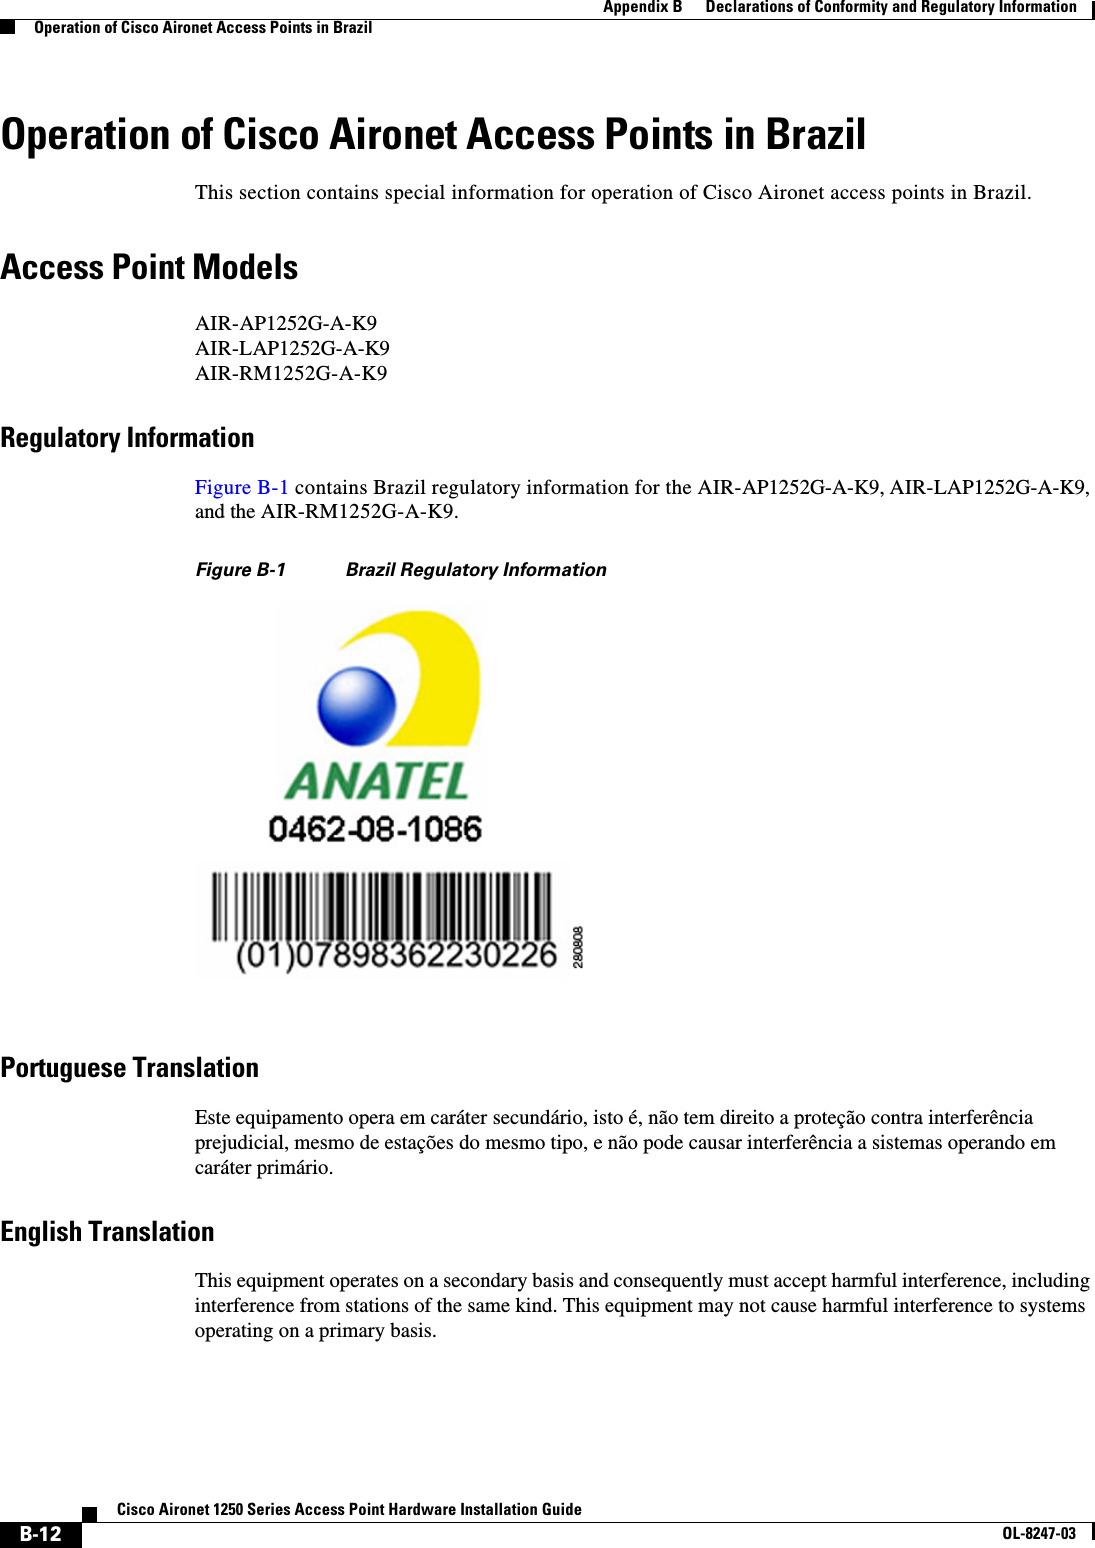  B-12Cisco Aironet 1250 Series Access Point Hardware Installation GuideOL-8247-03Appendix B      Declarations of Conformity and Regulatory InformationOperation of Cisco Aironet Access Points in BrazilOperation of Cisco Aironet Access Points in BrazilThis section contains special information for operation of Cisco Aironet access points in Brazil.Access Point ModelsAIR-AP1252G-A-K9AIR-LAP1252G-A-K9AIR-RM1252G-A-K9Regulatory InformationFigure B-1 contains Brazil regulatory information for the AIR-AP1252G-A-K9, AIR-LAP1252G-A-K9, and the AIR-RM1252G-A-K9.Figure B-1 Brazil Regulatory InformationPortuguese TranslationEste equipamento opera em caráter secundário, isto é, não tem direito a proteção contra interferência prejudicial, mesmo de estações do mesmo tipo, e não pode causar interferência a sistemas operando em caráter primário.English TranslationThis equipment operates on a secondary basis and consequently must accept harmful interference, including interference from stations of the same kind. This equipment may not cause harmful interference to systems operating on a primary basis. 